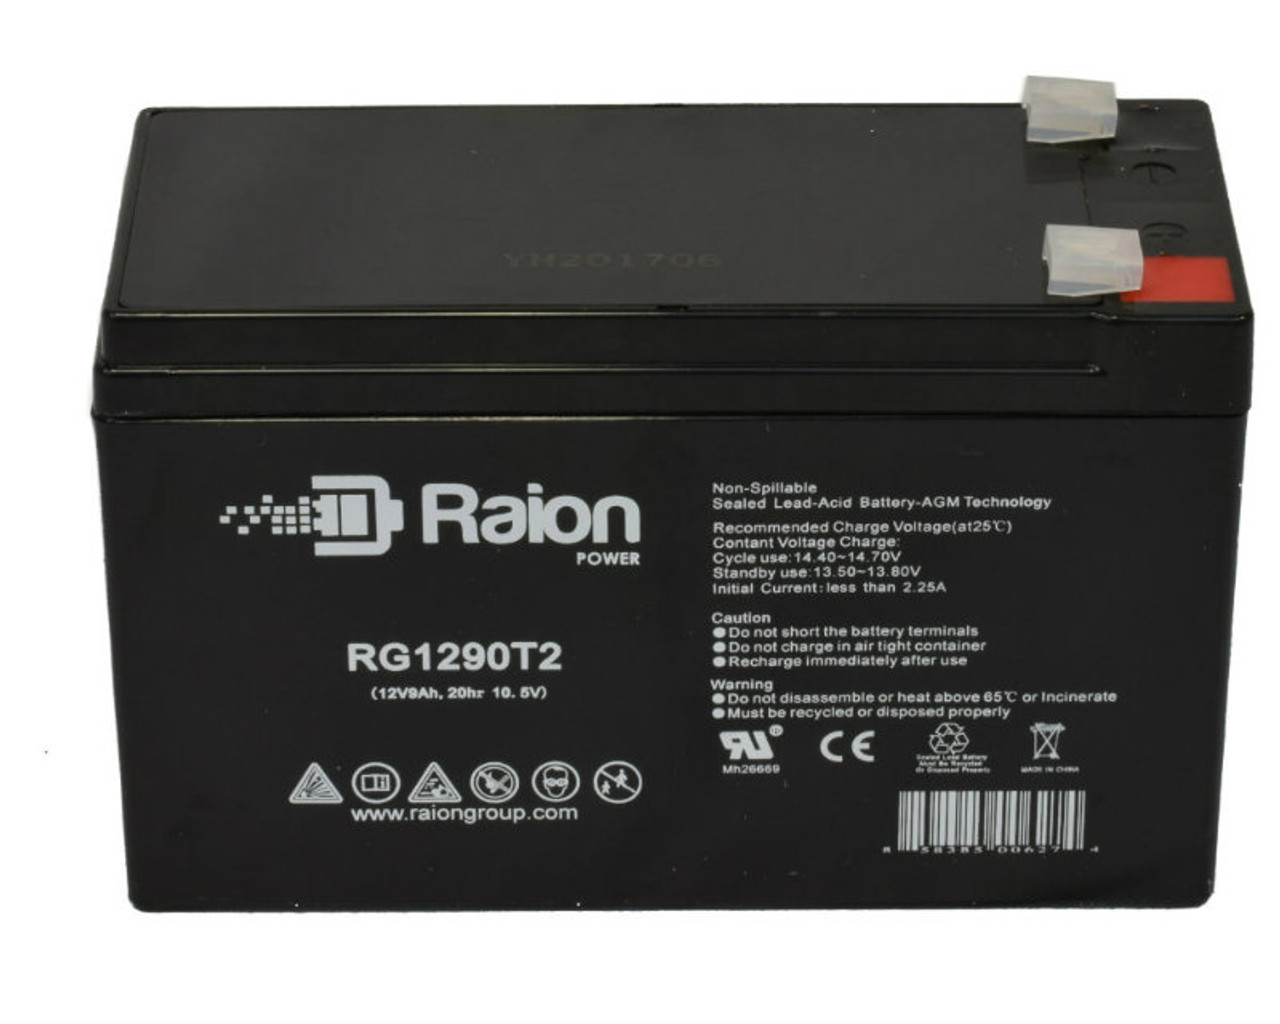 Raion Power RG1290T2 12V 9Ah Lead Acid Battery for Silent Partner Edge Lite R